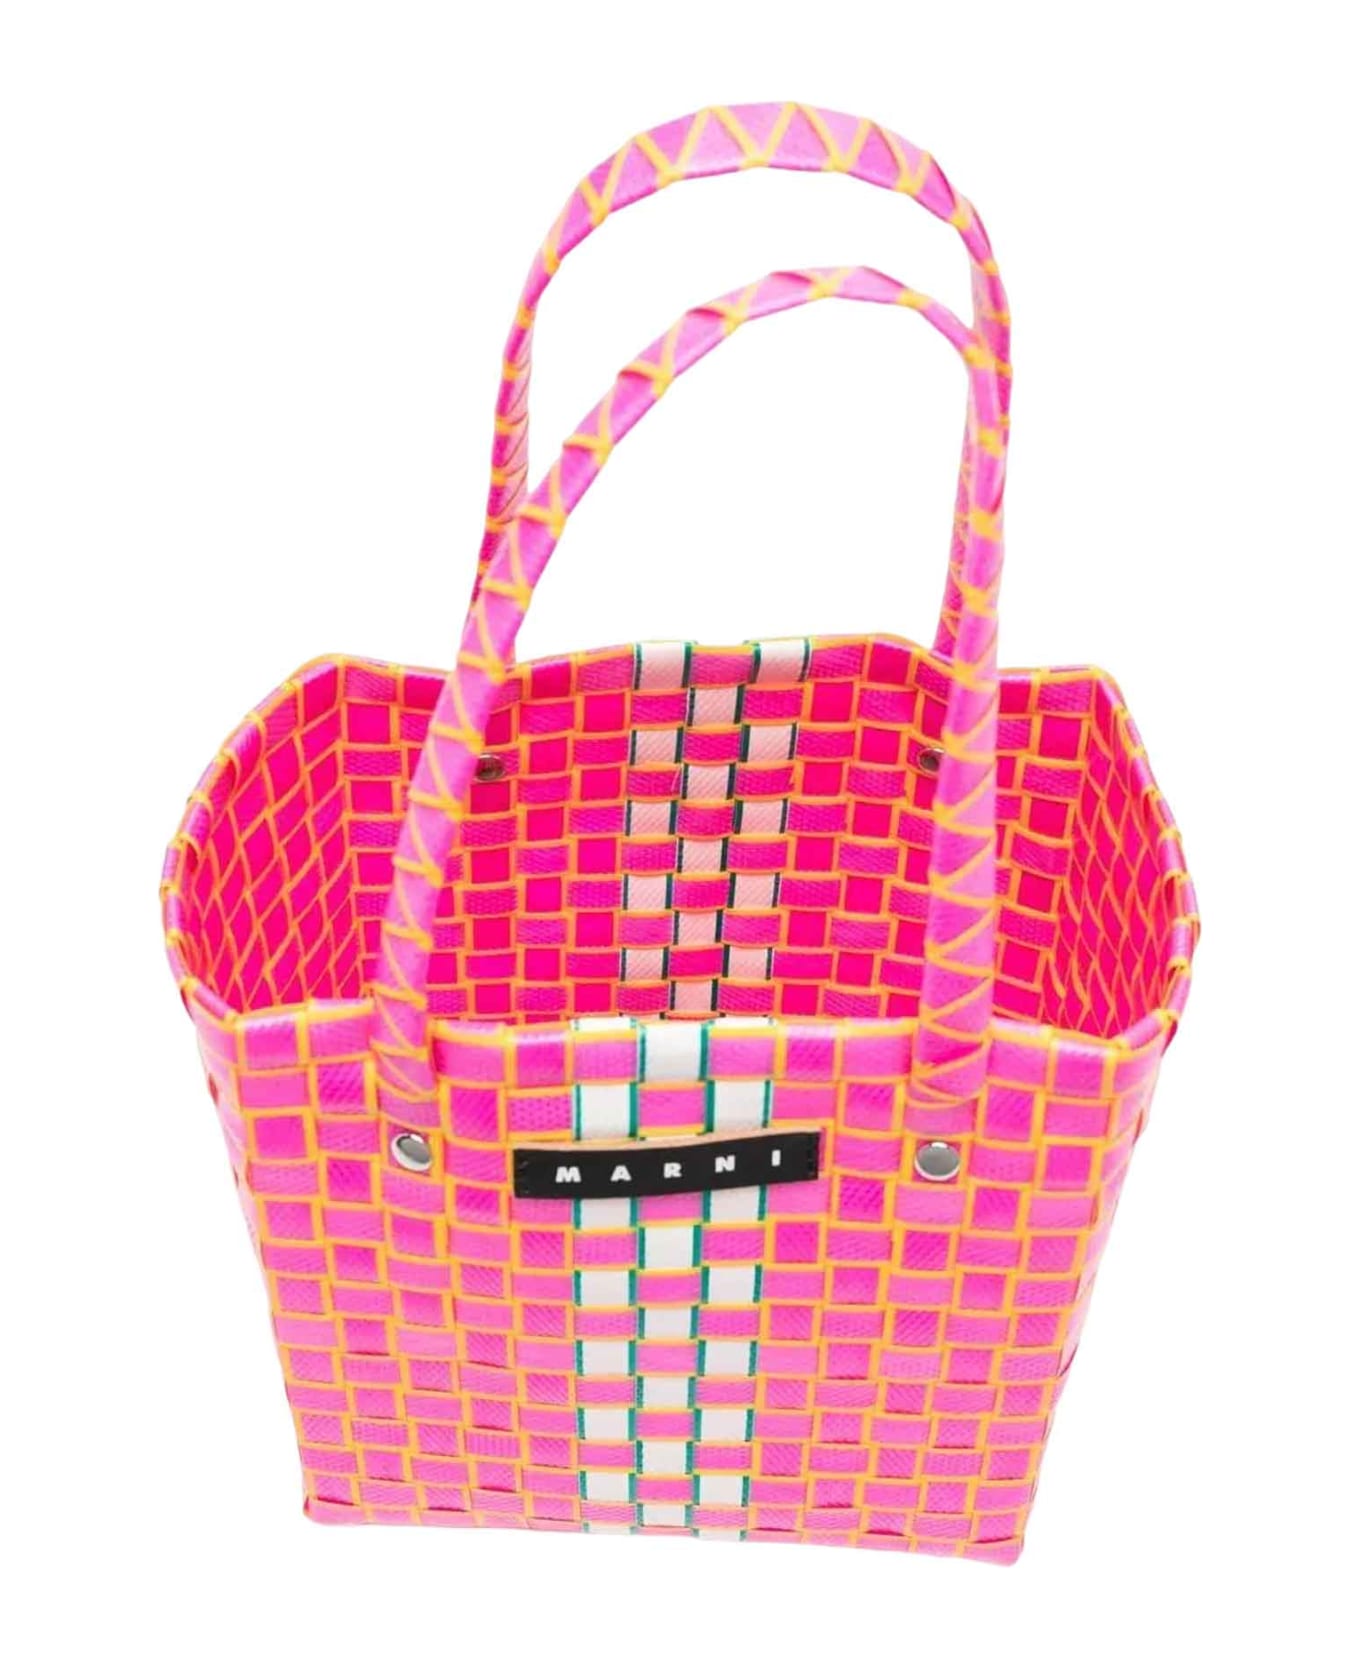 Marni Pink Bag Girl - Rosa